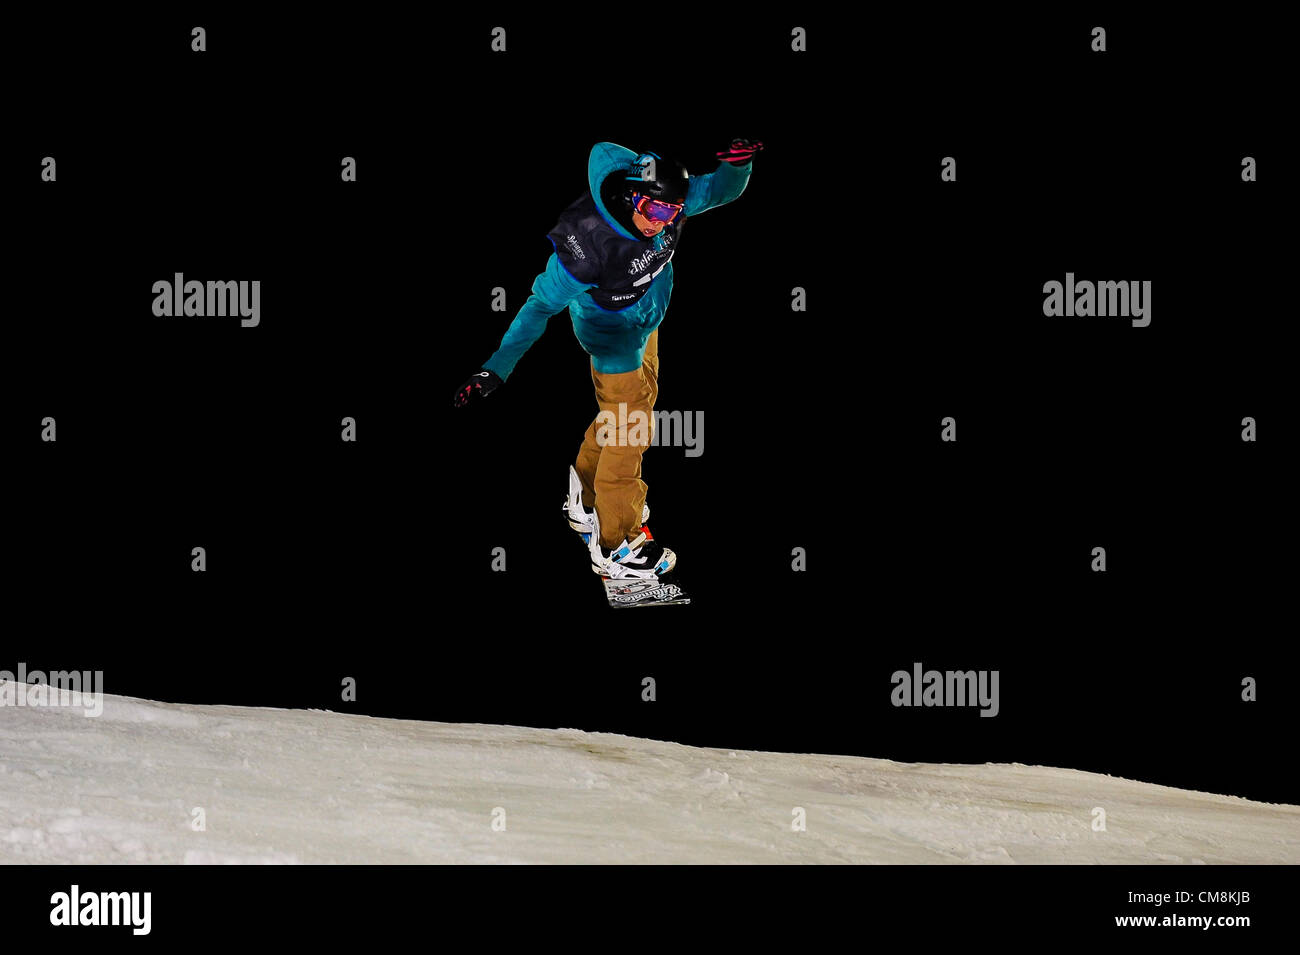 27.10.2012 Londres, Angleterre. Maxence Parrot (CAN) en action sur le Big Air Jump pendant le gel Snowboard Big Air Comp finales à l'implacable gel Energy Drink Festival à Battersea Power Station. Banque D'Images